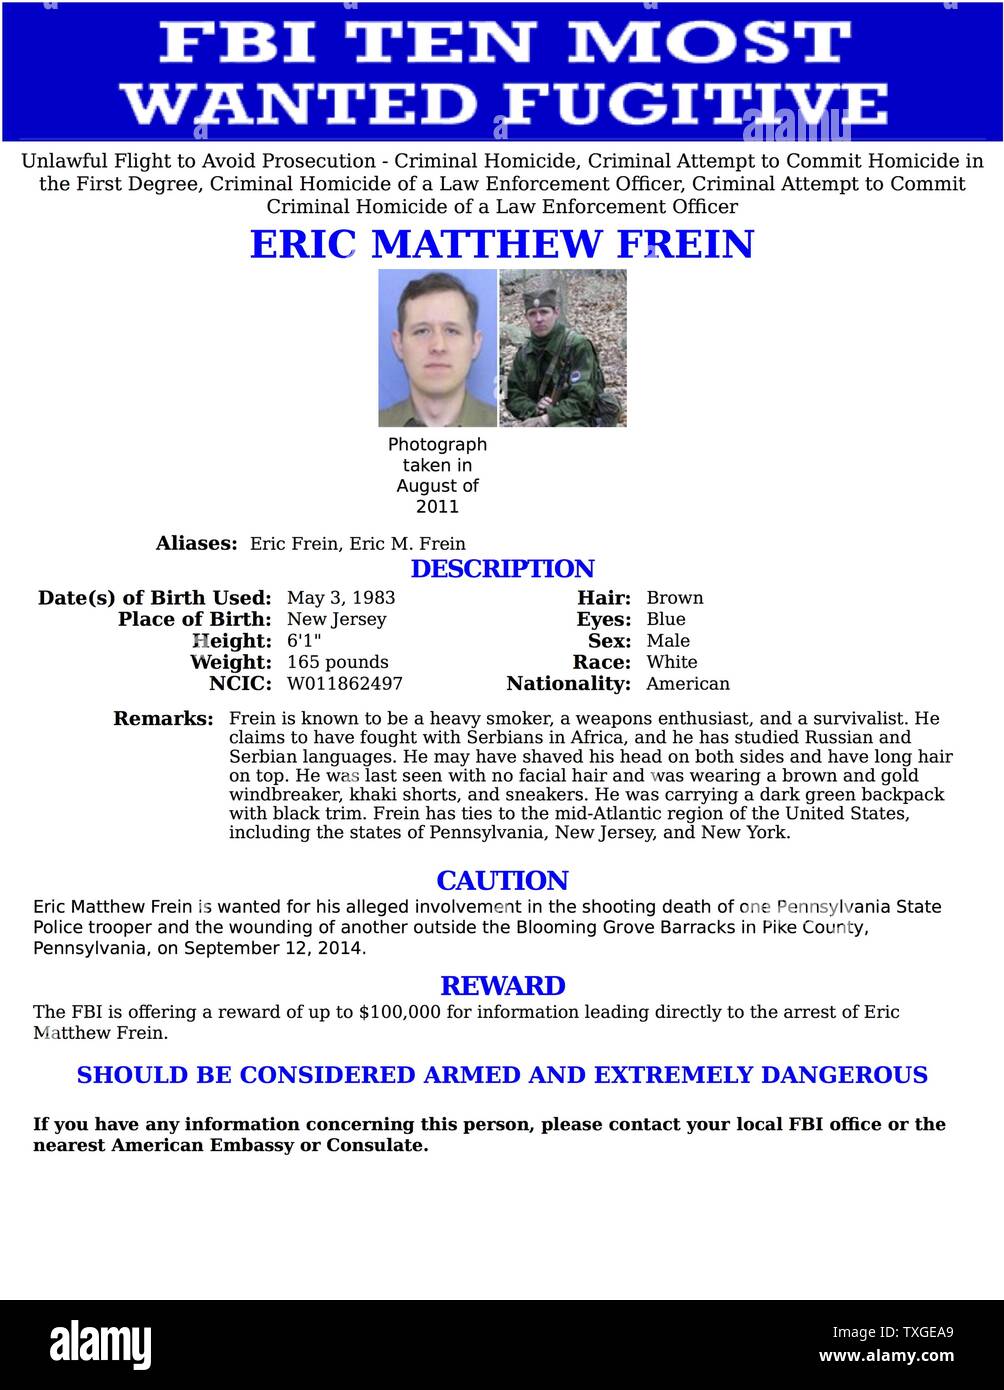 Les dix plus recherchés avis publié par le FBI pour Eric Matthew télé  (1983-) recherché pour son implication présumée dans la mort de l'un d'Iowa  State Police Trooper et en blessant un